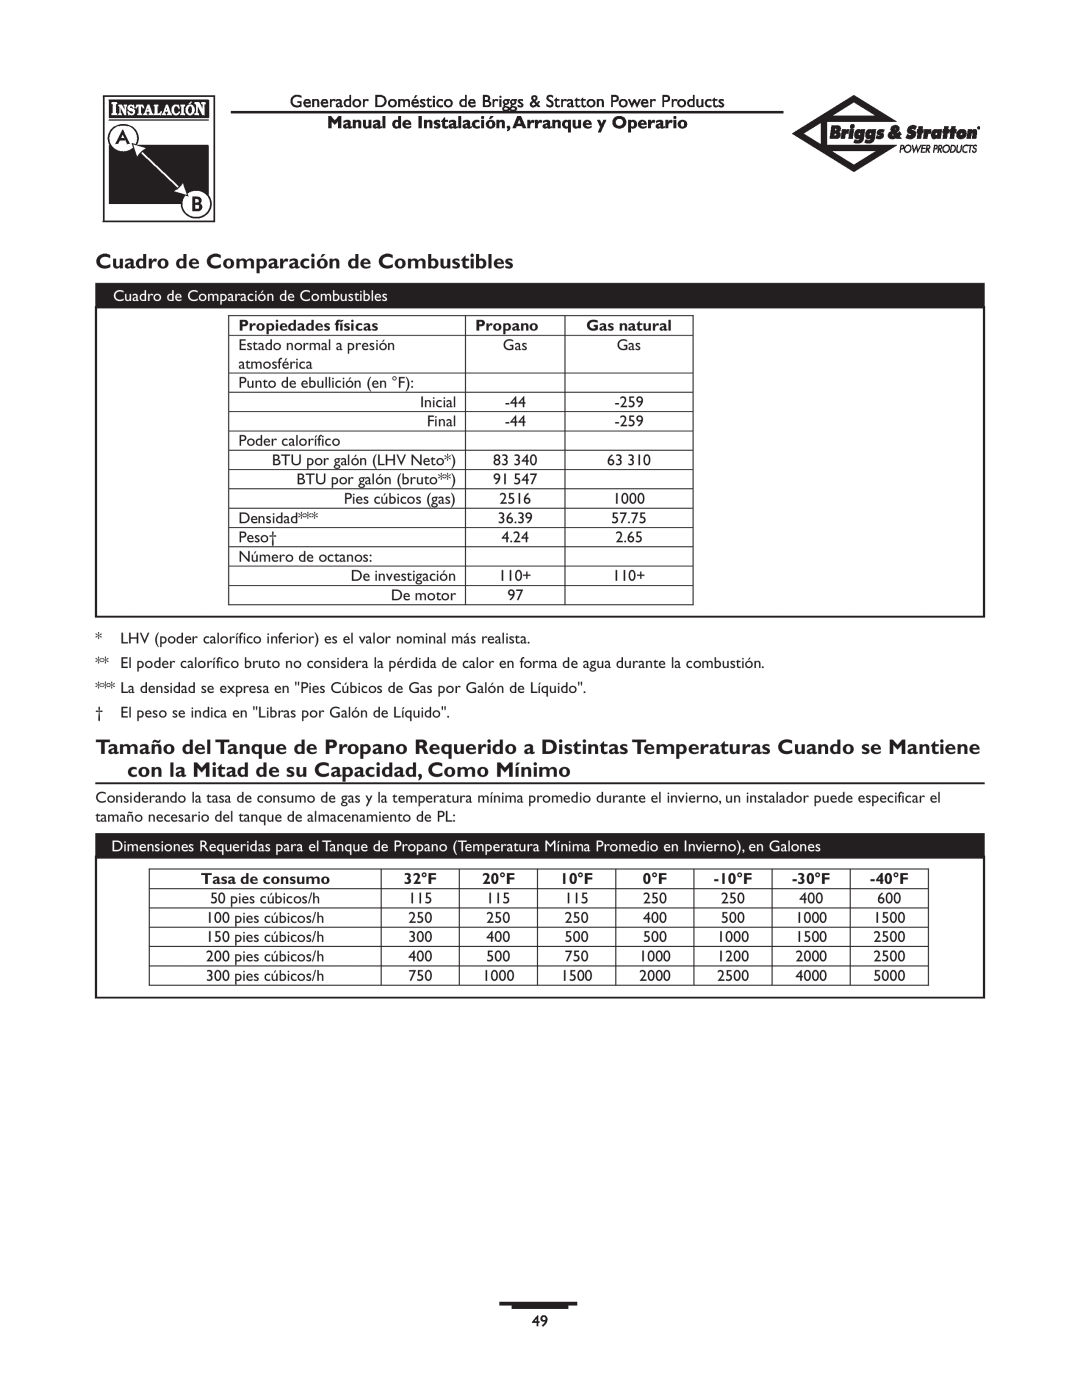 Briggs & Stratton 01897-0 manual Cuadro de Comparación de Combustibles, Manual de Instalación,Arranque y Operario, Propano 